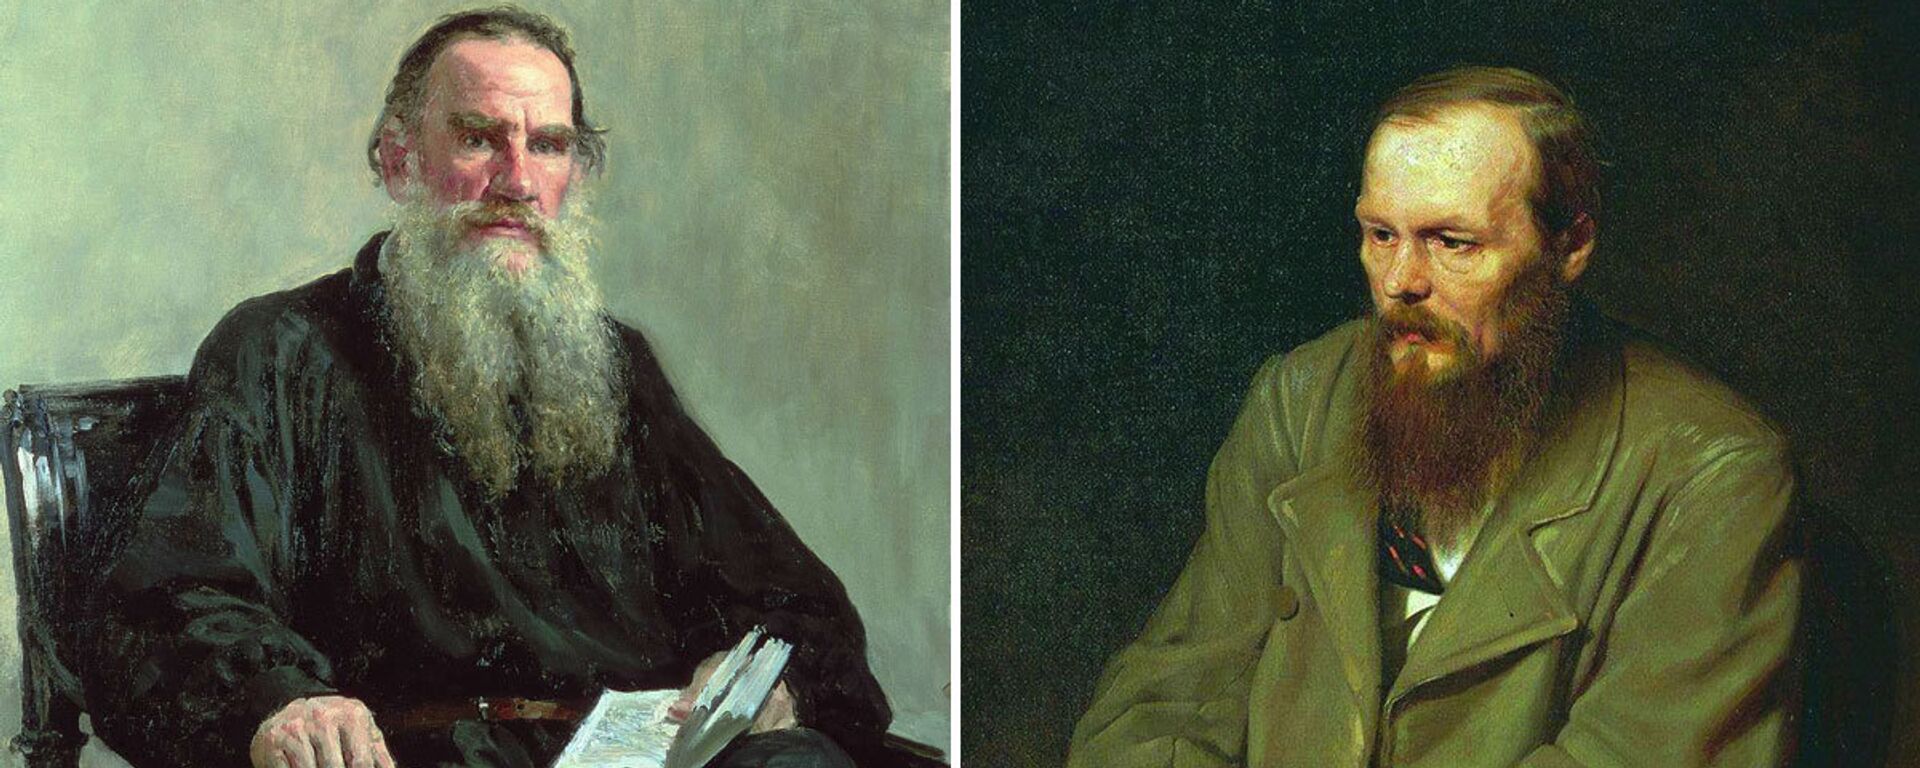 Tolstoy mu Dostoyevski mi? - Sputnik Türkiye, 1920, 04.03.2022